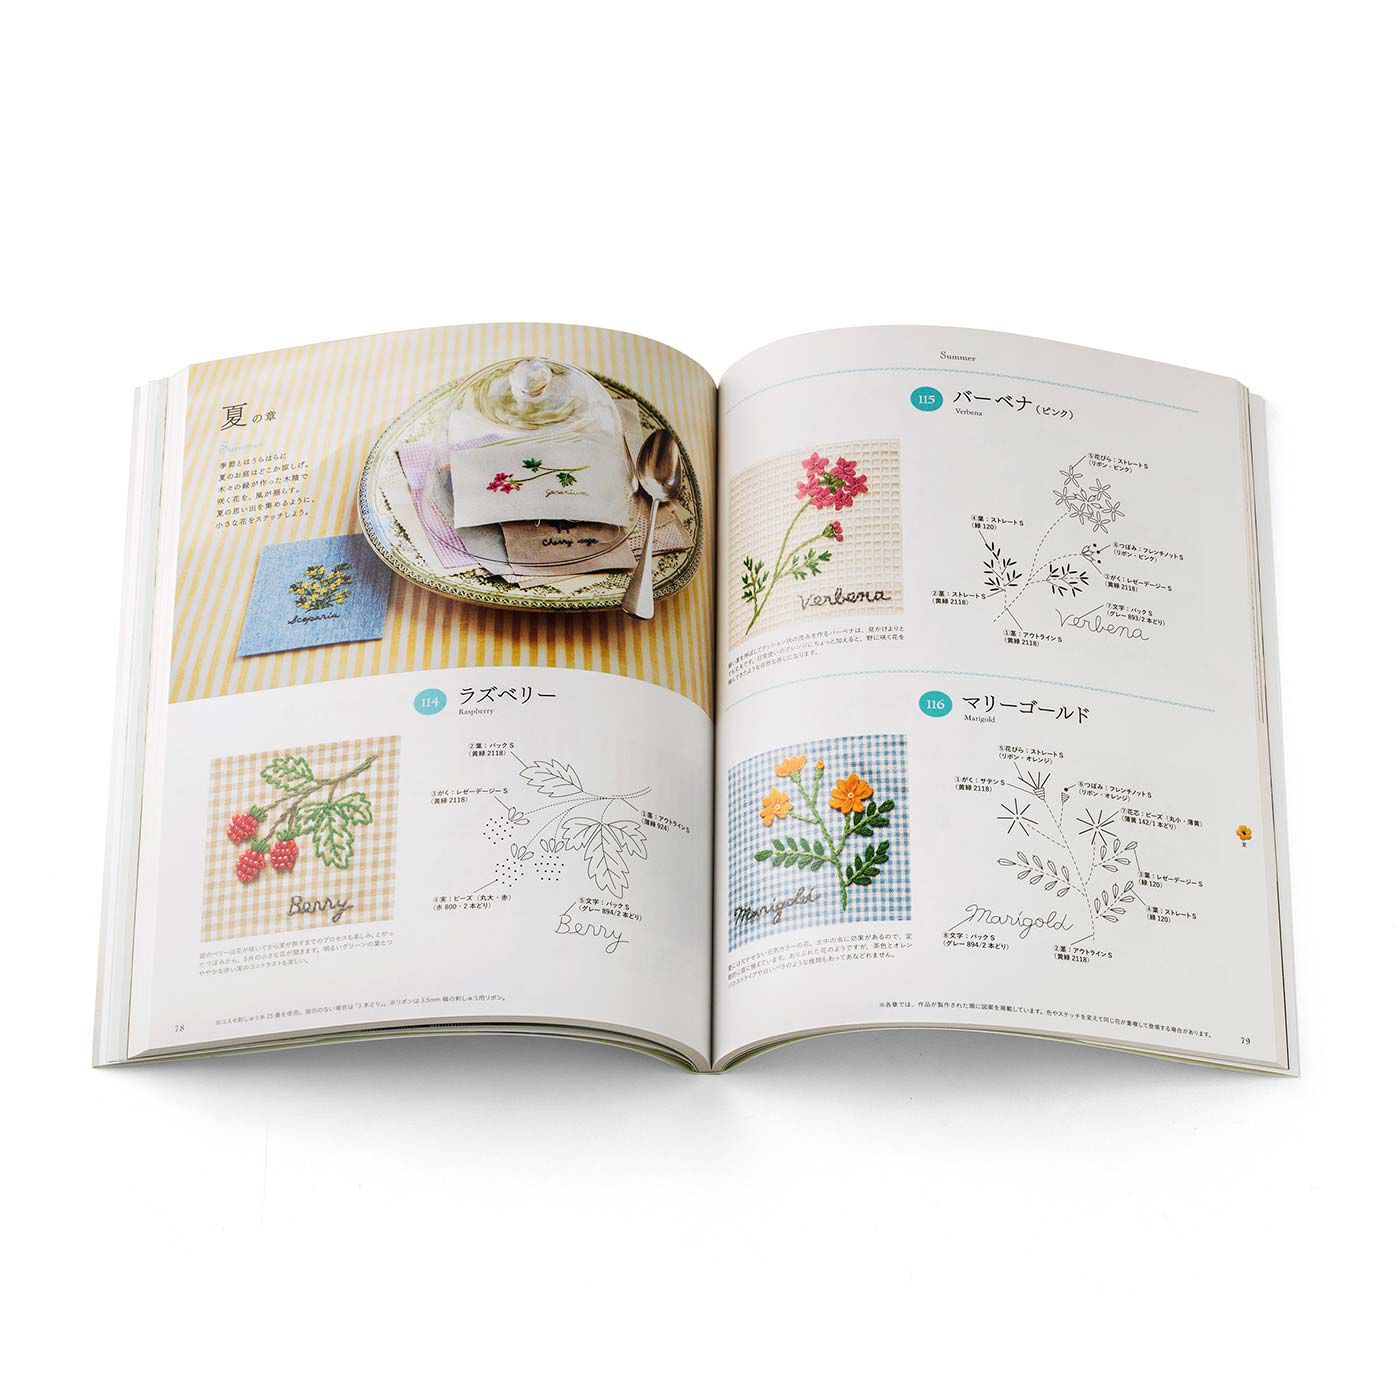 季節のお花で暮らしに彩りを 187の刺繍デザイン 青木 和子さんのお庭